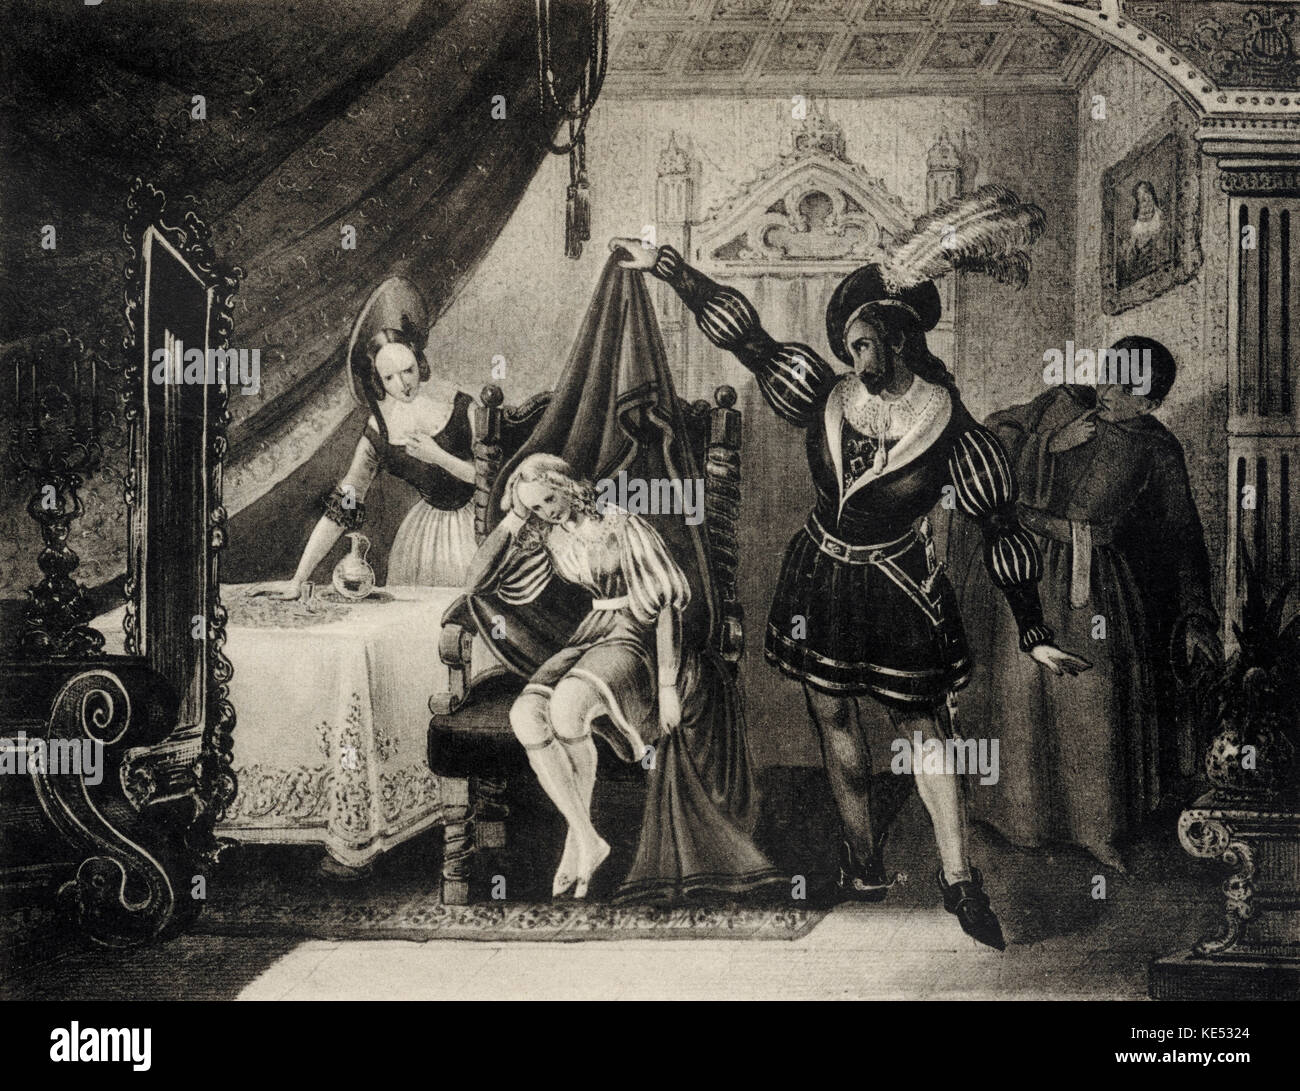 Von Wolfgang Amadeus Mozarts Die Hochzeit des Figaro (Le nozze di Figaro) - Szene mit Susanna durch den Grafen entdeckt und Priester Basilio. Österreichischen Komponisten, 27. Januar 1756 - vom 5. Dezember 1791. Stockfoto